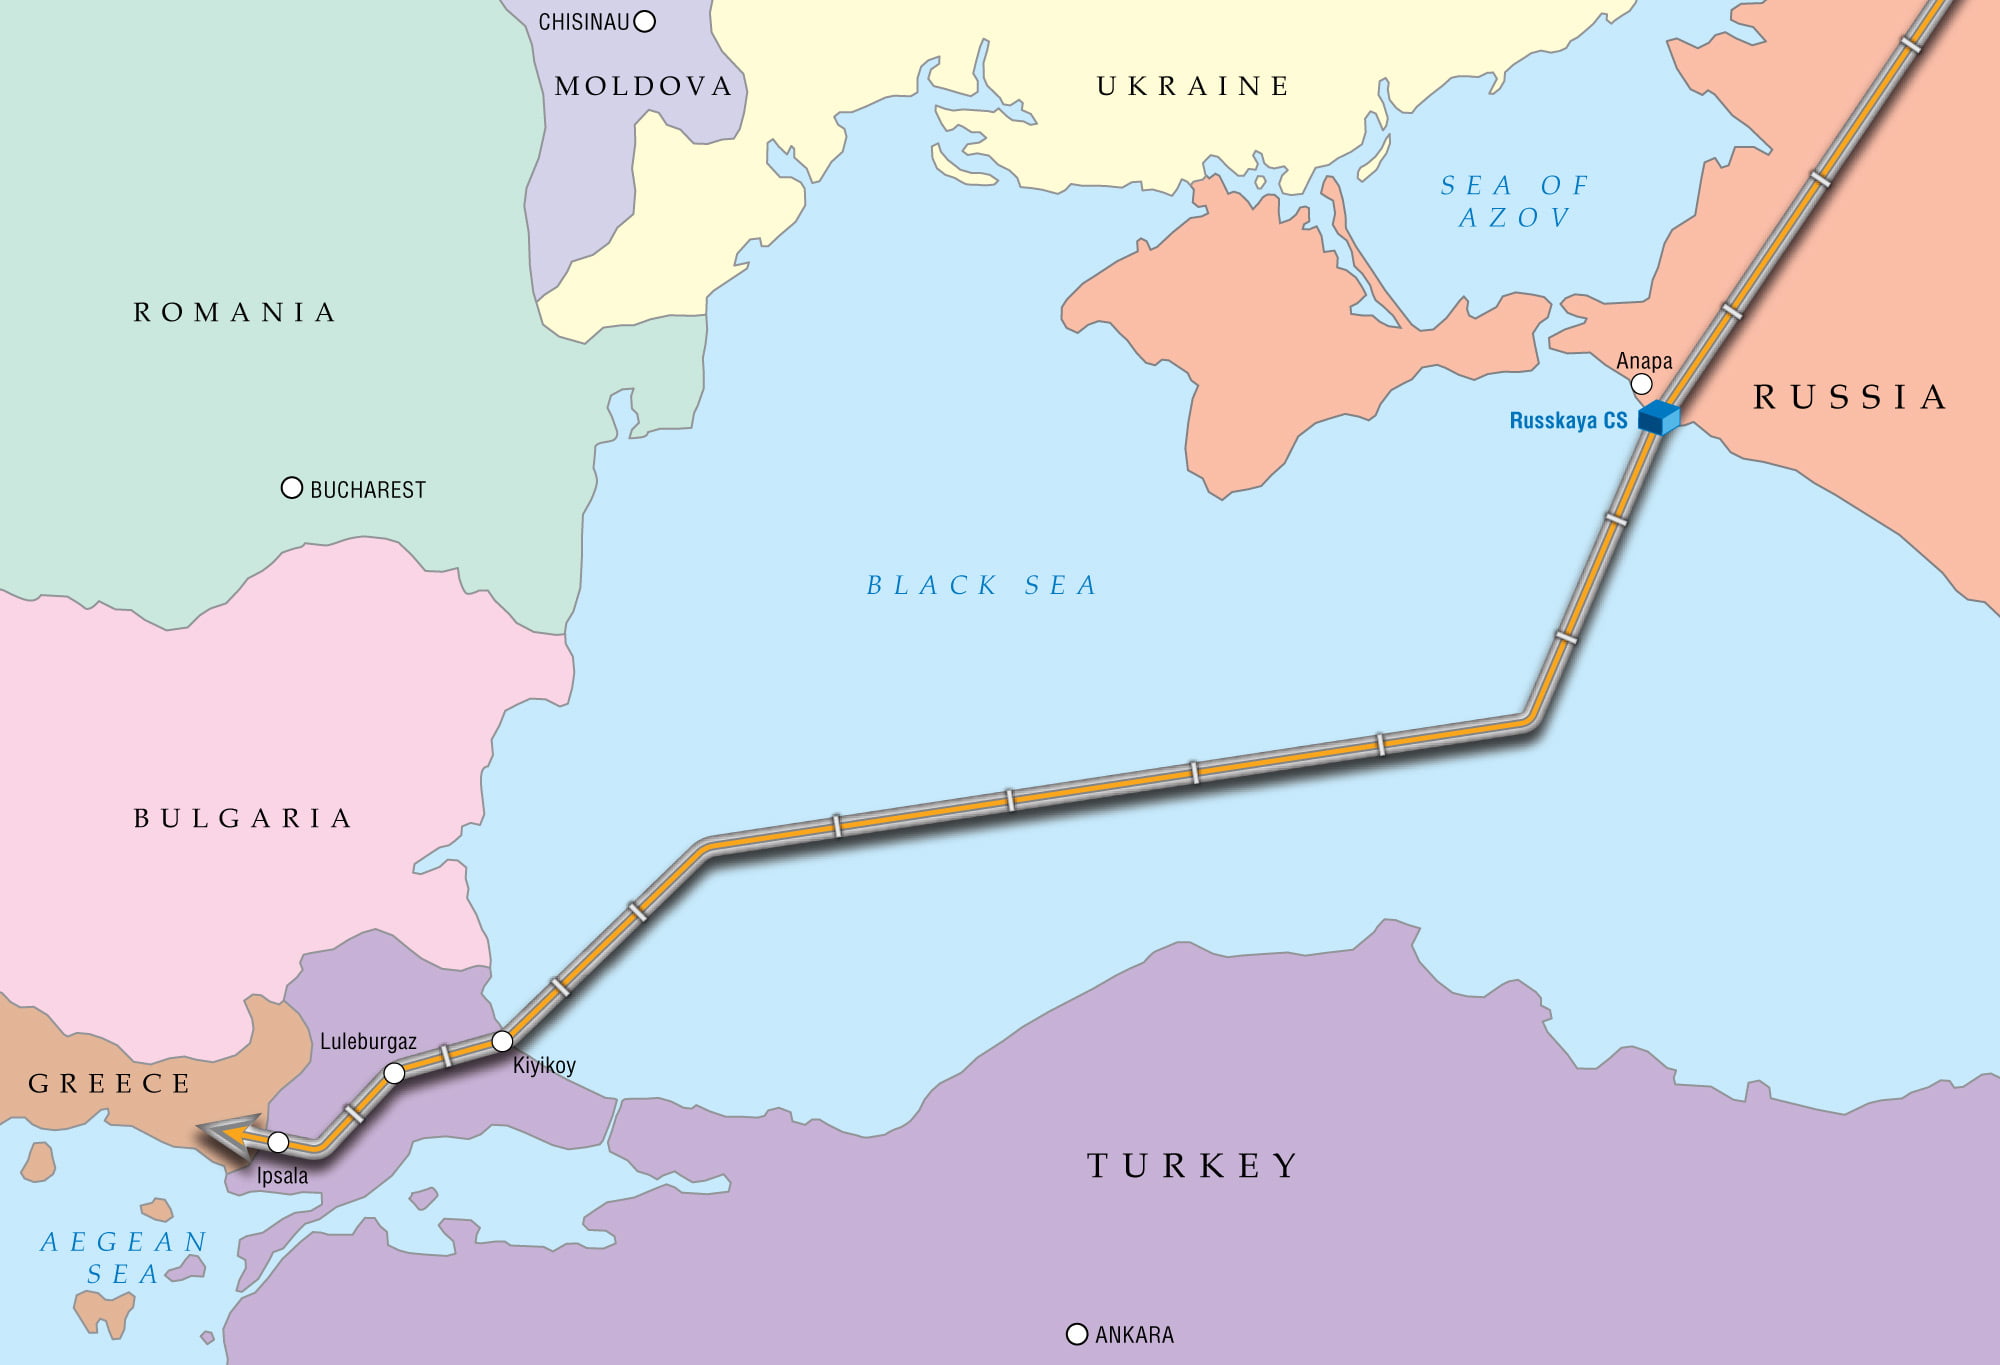 Αλεξάντερ Νόβακ: Μεγάλη πιθανότητα υπογραφής της συμφωνίας για την επέκταση του Turkish Stream στην Ελλάδα